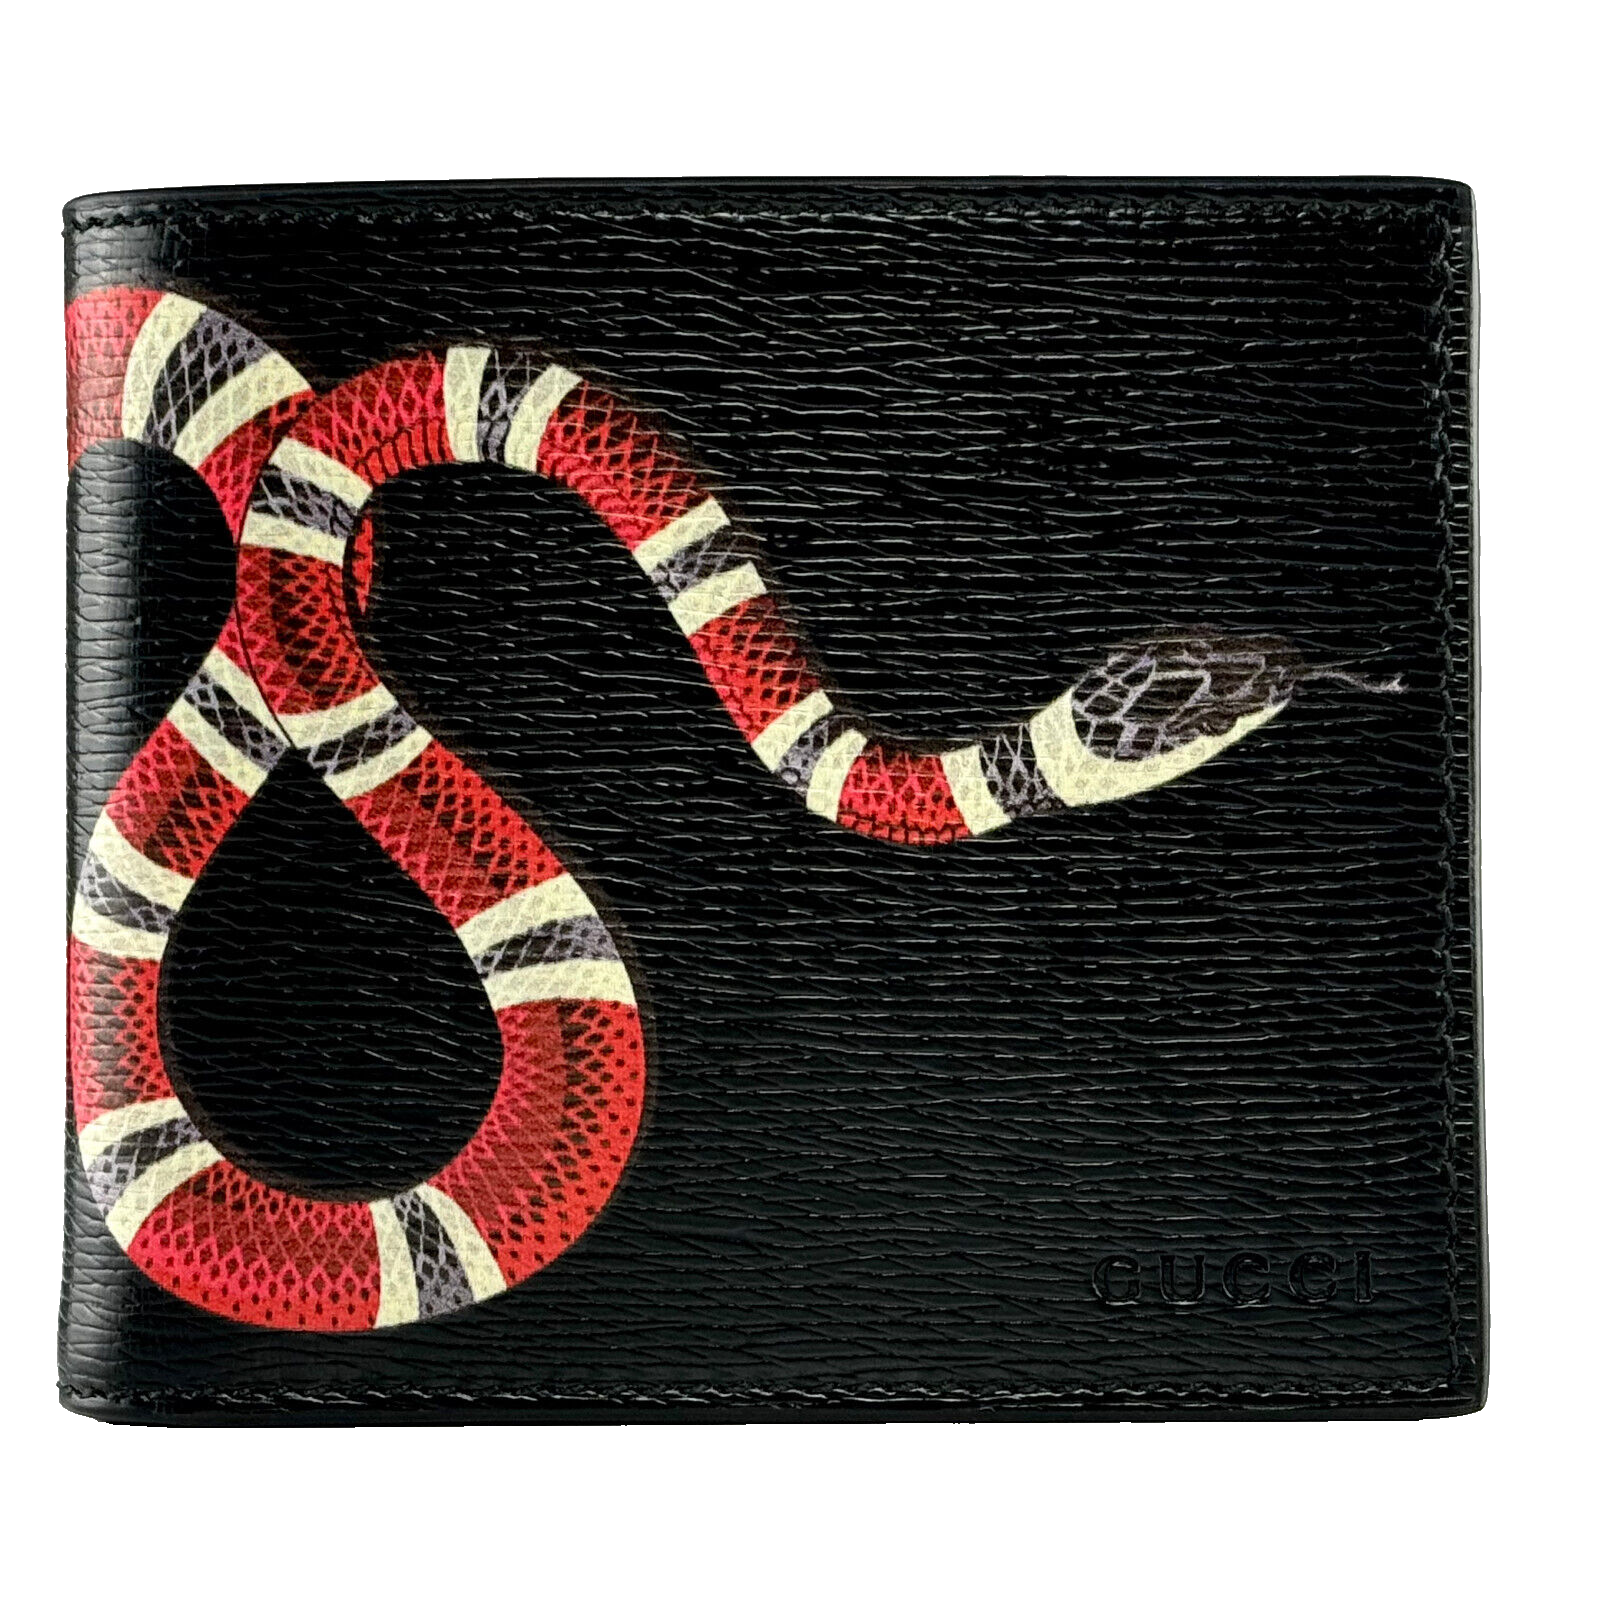 Gucci Portemonnaie Schlangenmuster Leder Schwarz wallet schwarz black snake leather